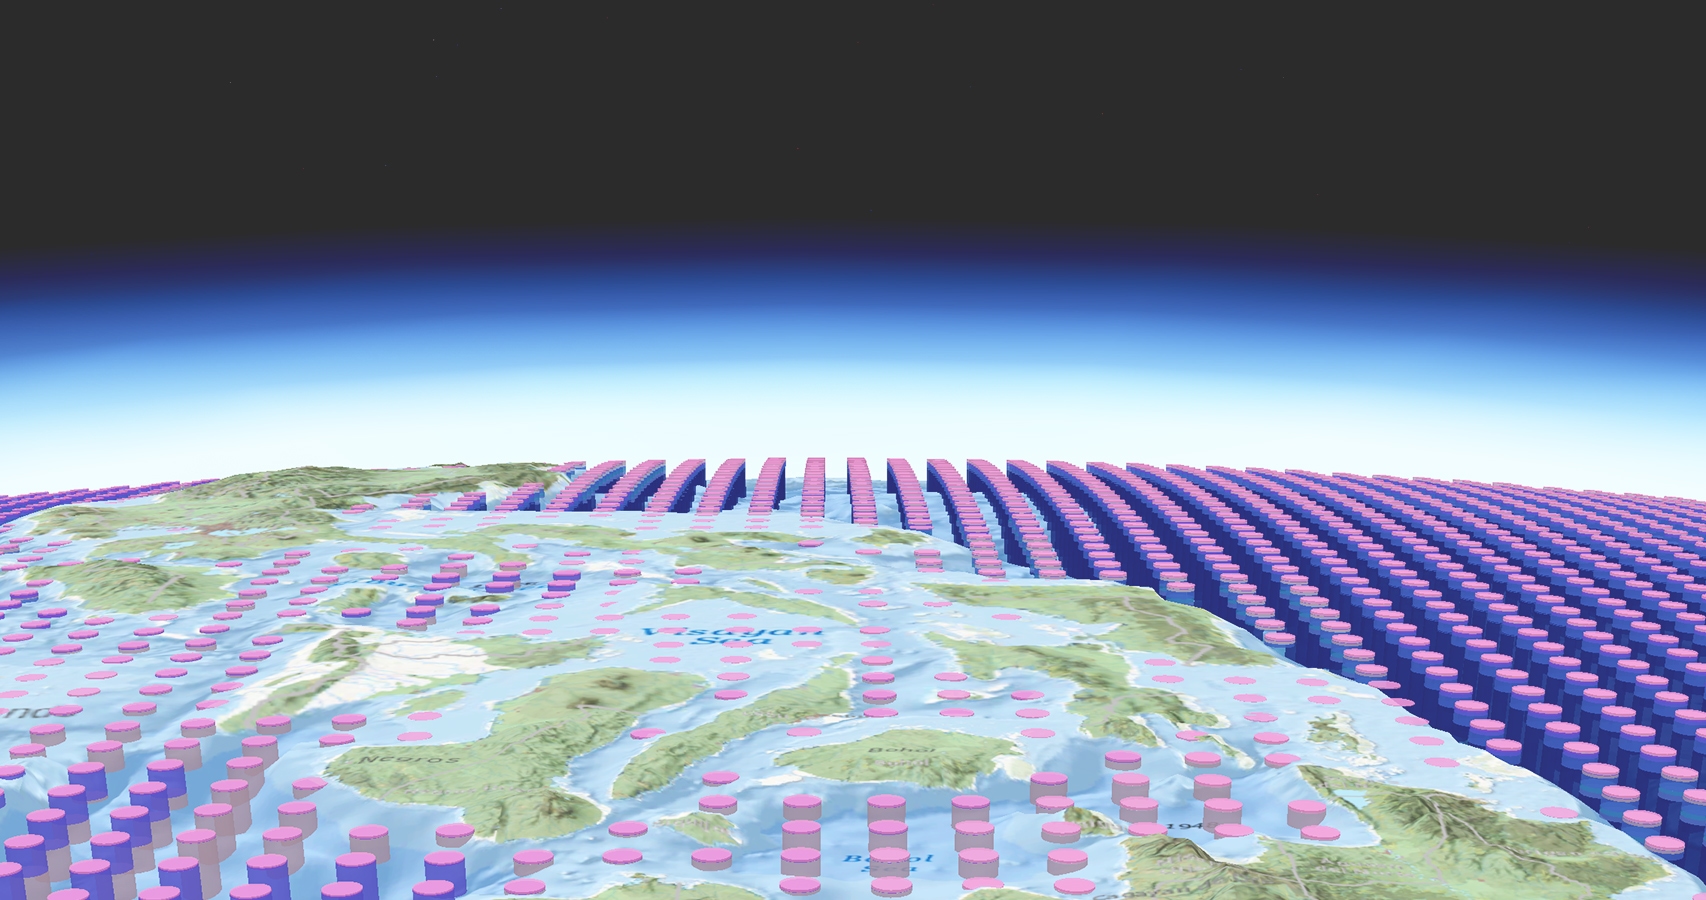 Um gráfico com linhas de cilindros rosa e roxo dispostos em linhas organizadas sobrepondo um mapa de contorno estilizado da Terra